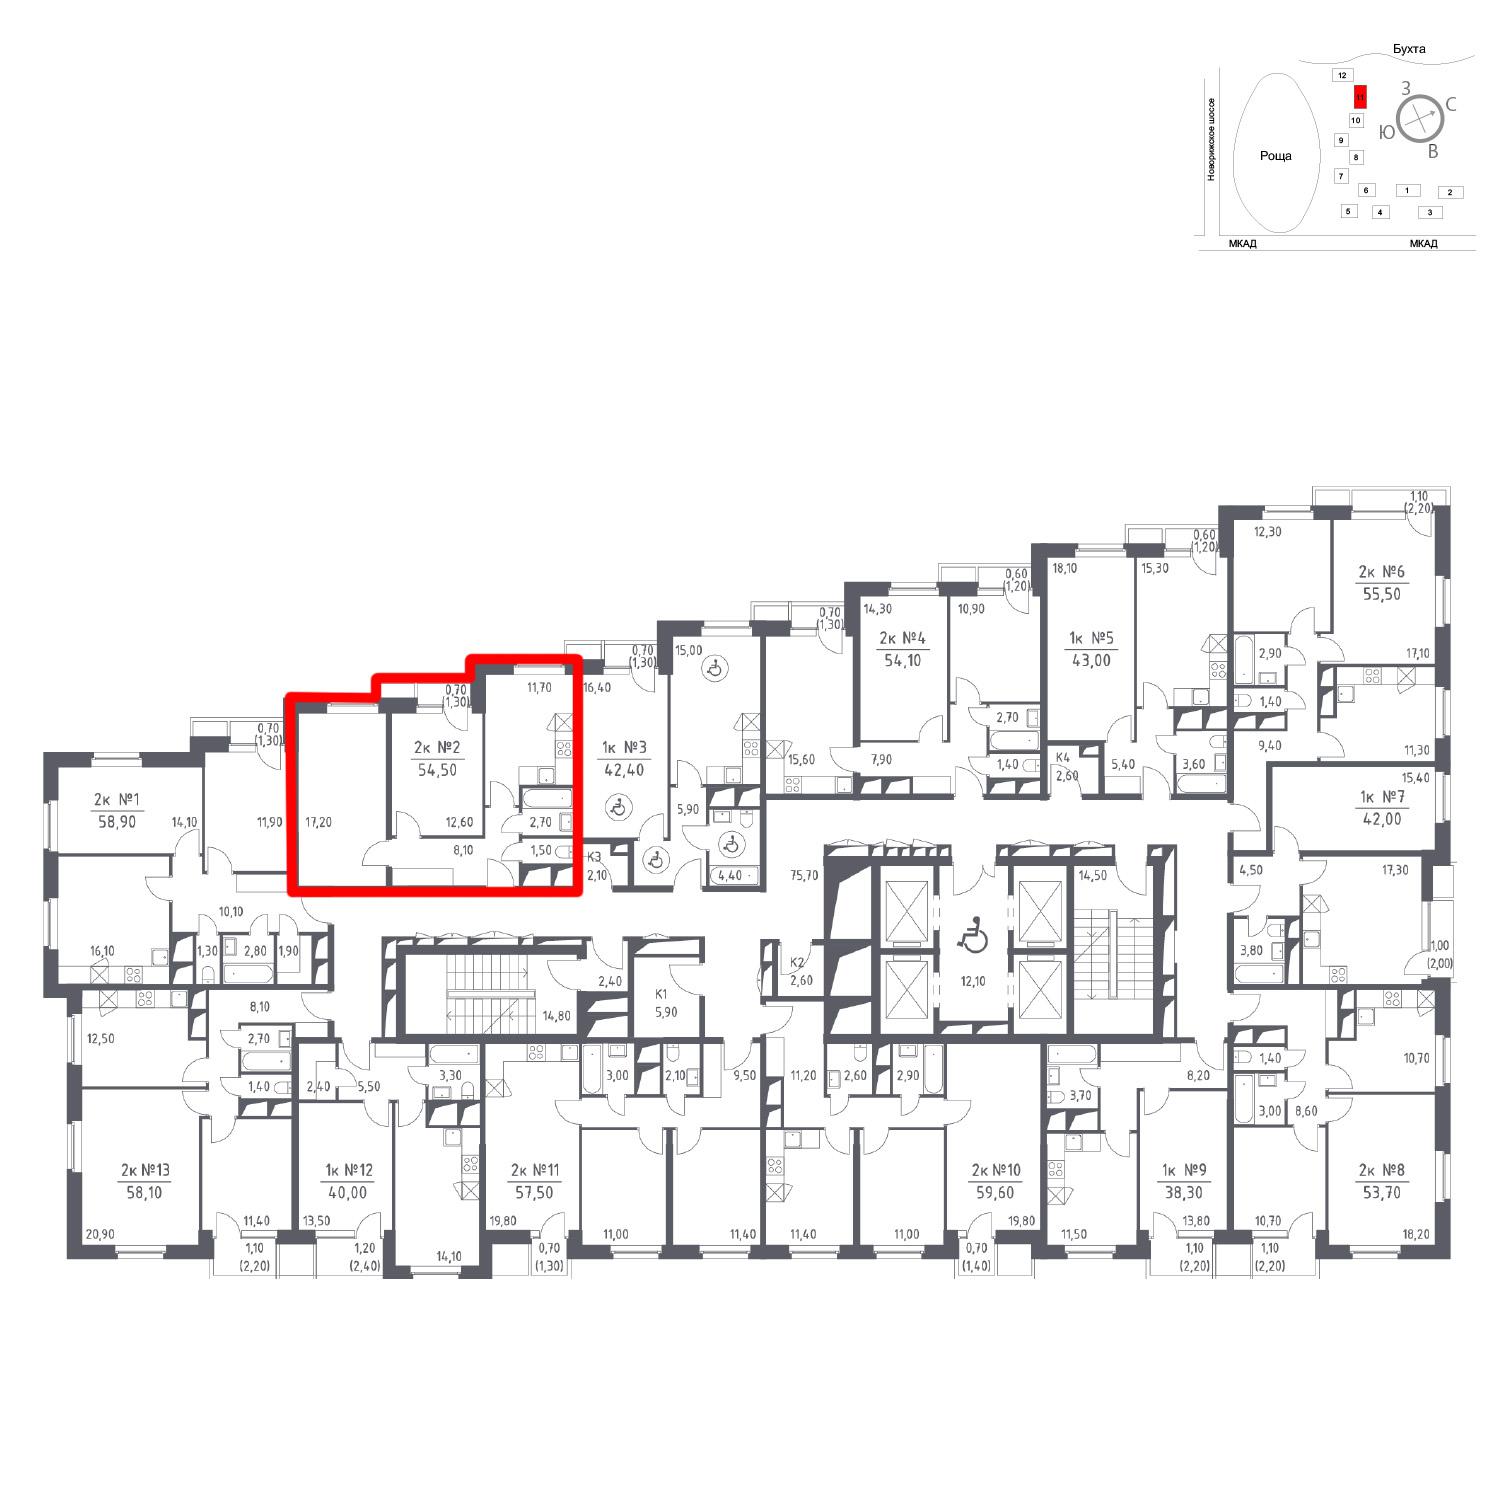 Продаётся 2-комнатная квартира в новостройке 54.5 кв.м. этаж 12/33 за 0 руб 